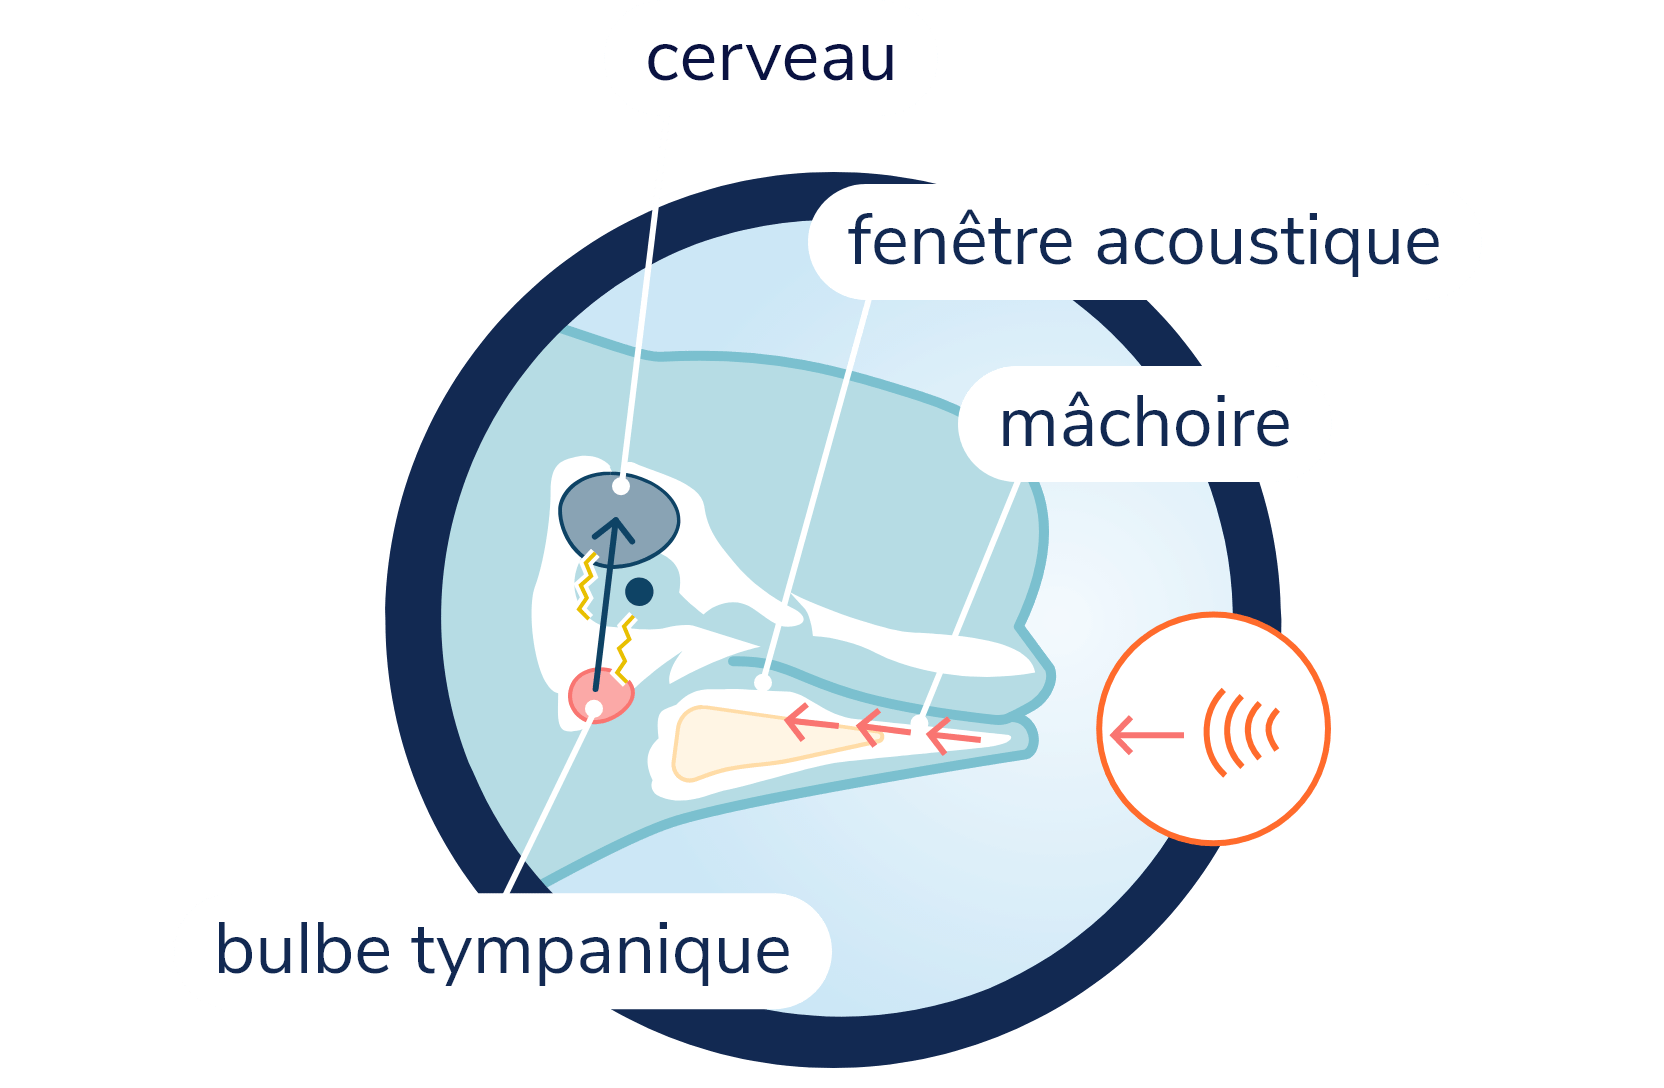 Anatomie du système auditif chez le béluga. La silouhette du béluga et son crâne sont visibles en transparence. Les sons sont perçus par la mâchoire inférieure et traversent la fenêtre acoustique se trouvant à l'intérieur de celle-ci. Les sons sont ensuite transmis au bulbe tympanique situé à la base du crâne. Le bulbe tympanique transmet au signal nerveux jusqu'au cerveau.